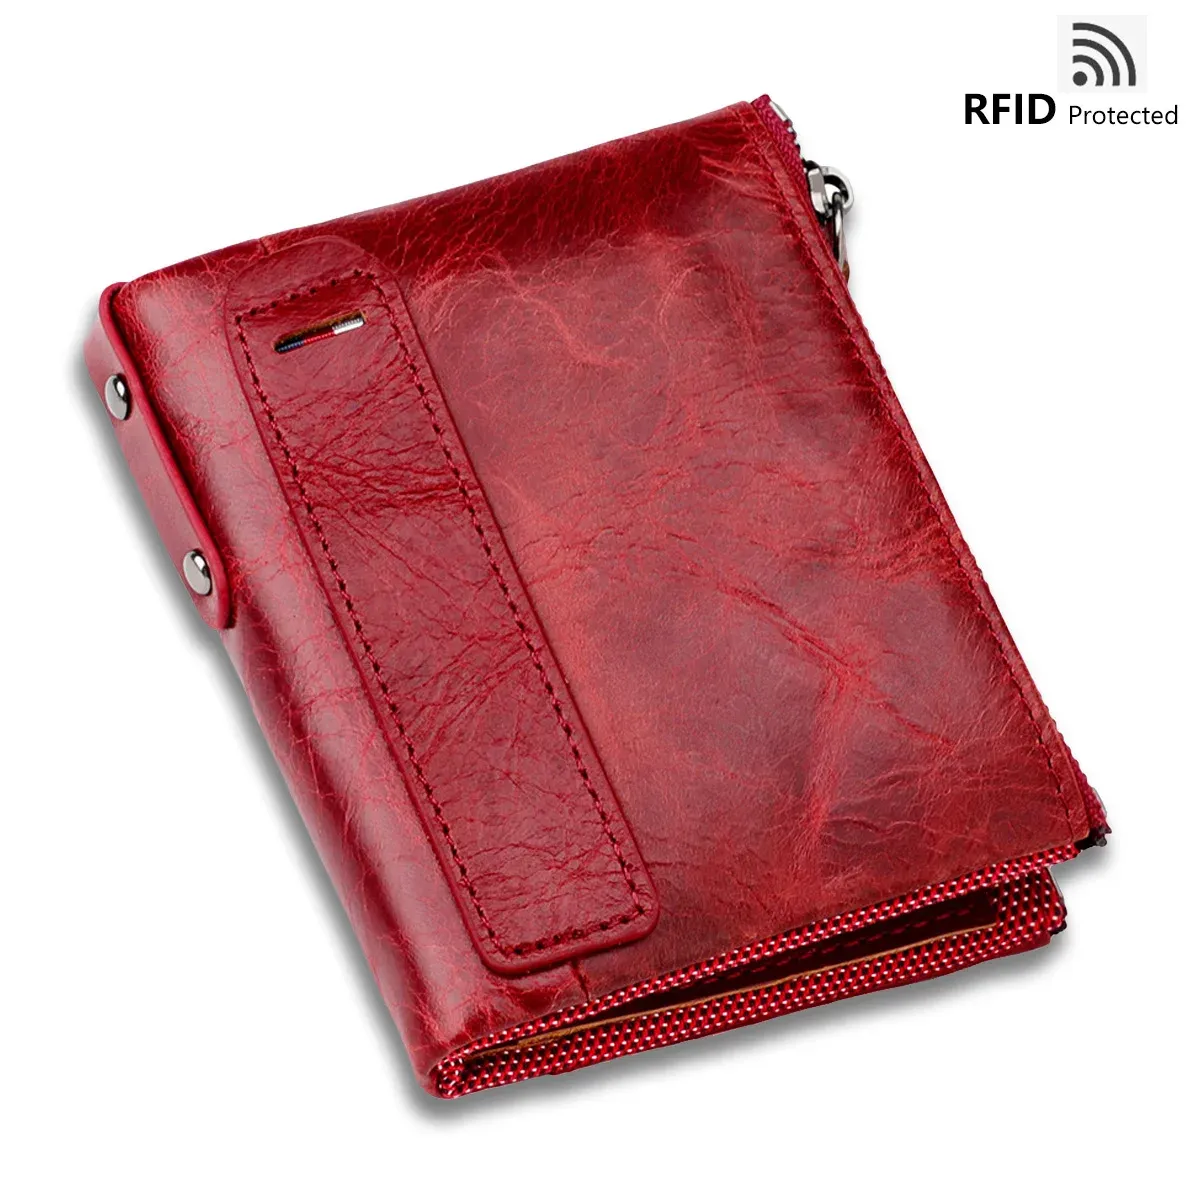 Sac à main le cuir authentique portefeuille portefeuille rouge rfid bloquant dames sac en cuir sac luxe femelle bourse de petite pièce portefeuille pour femmes hommes